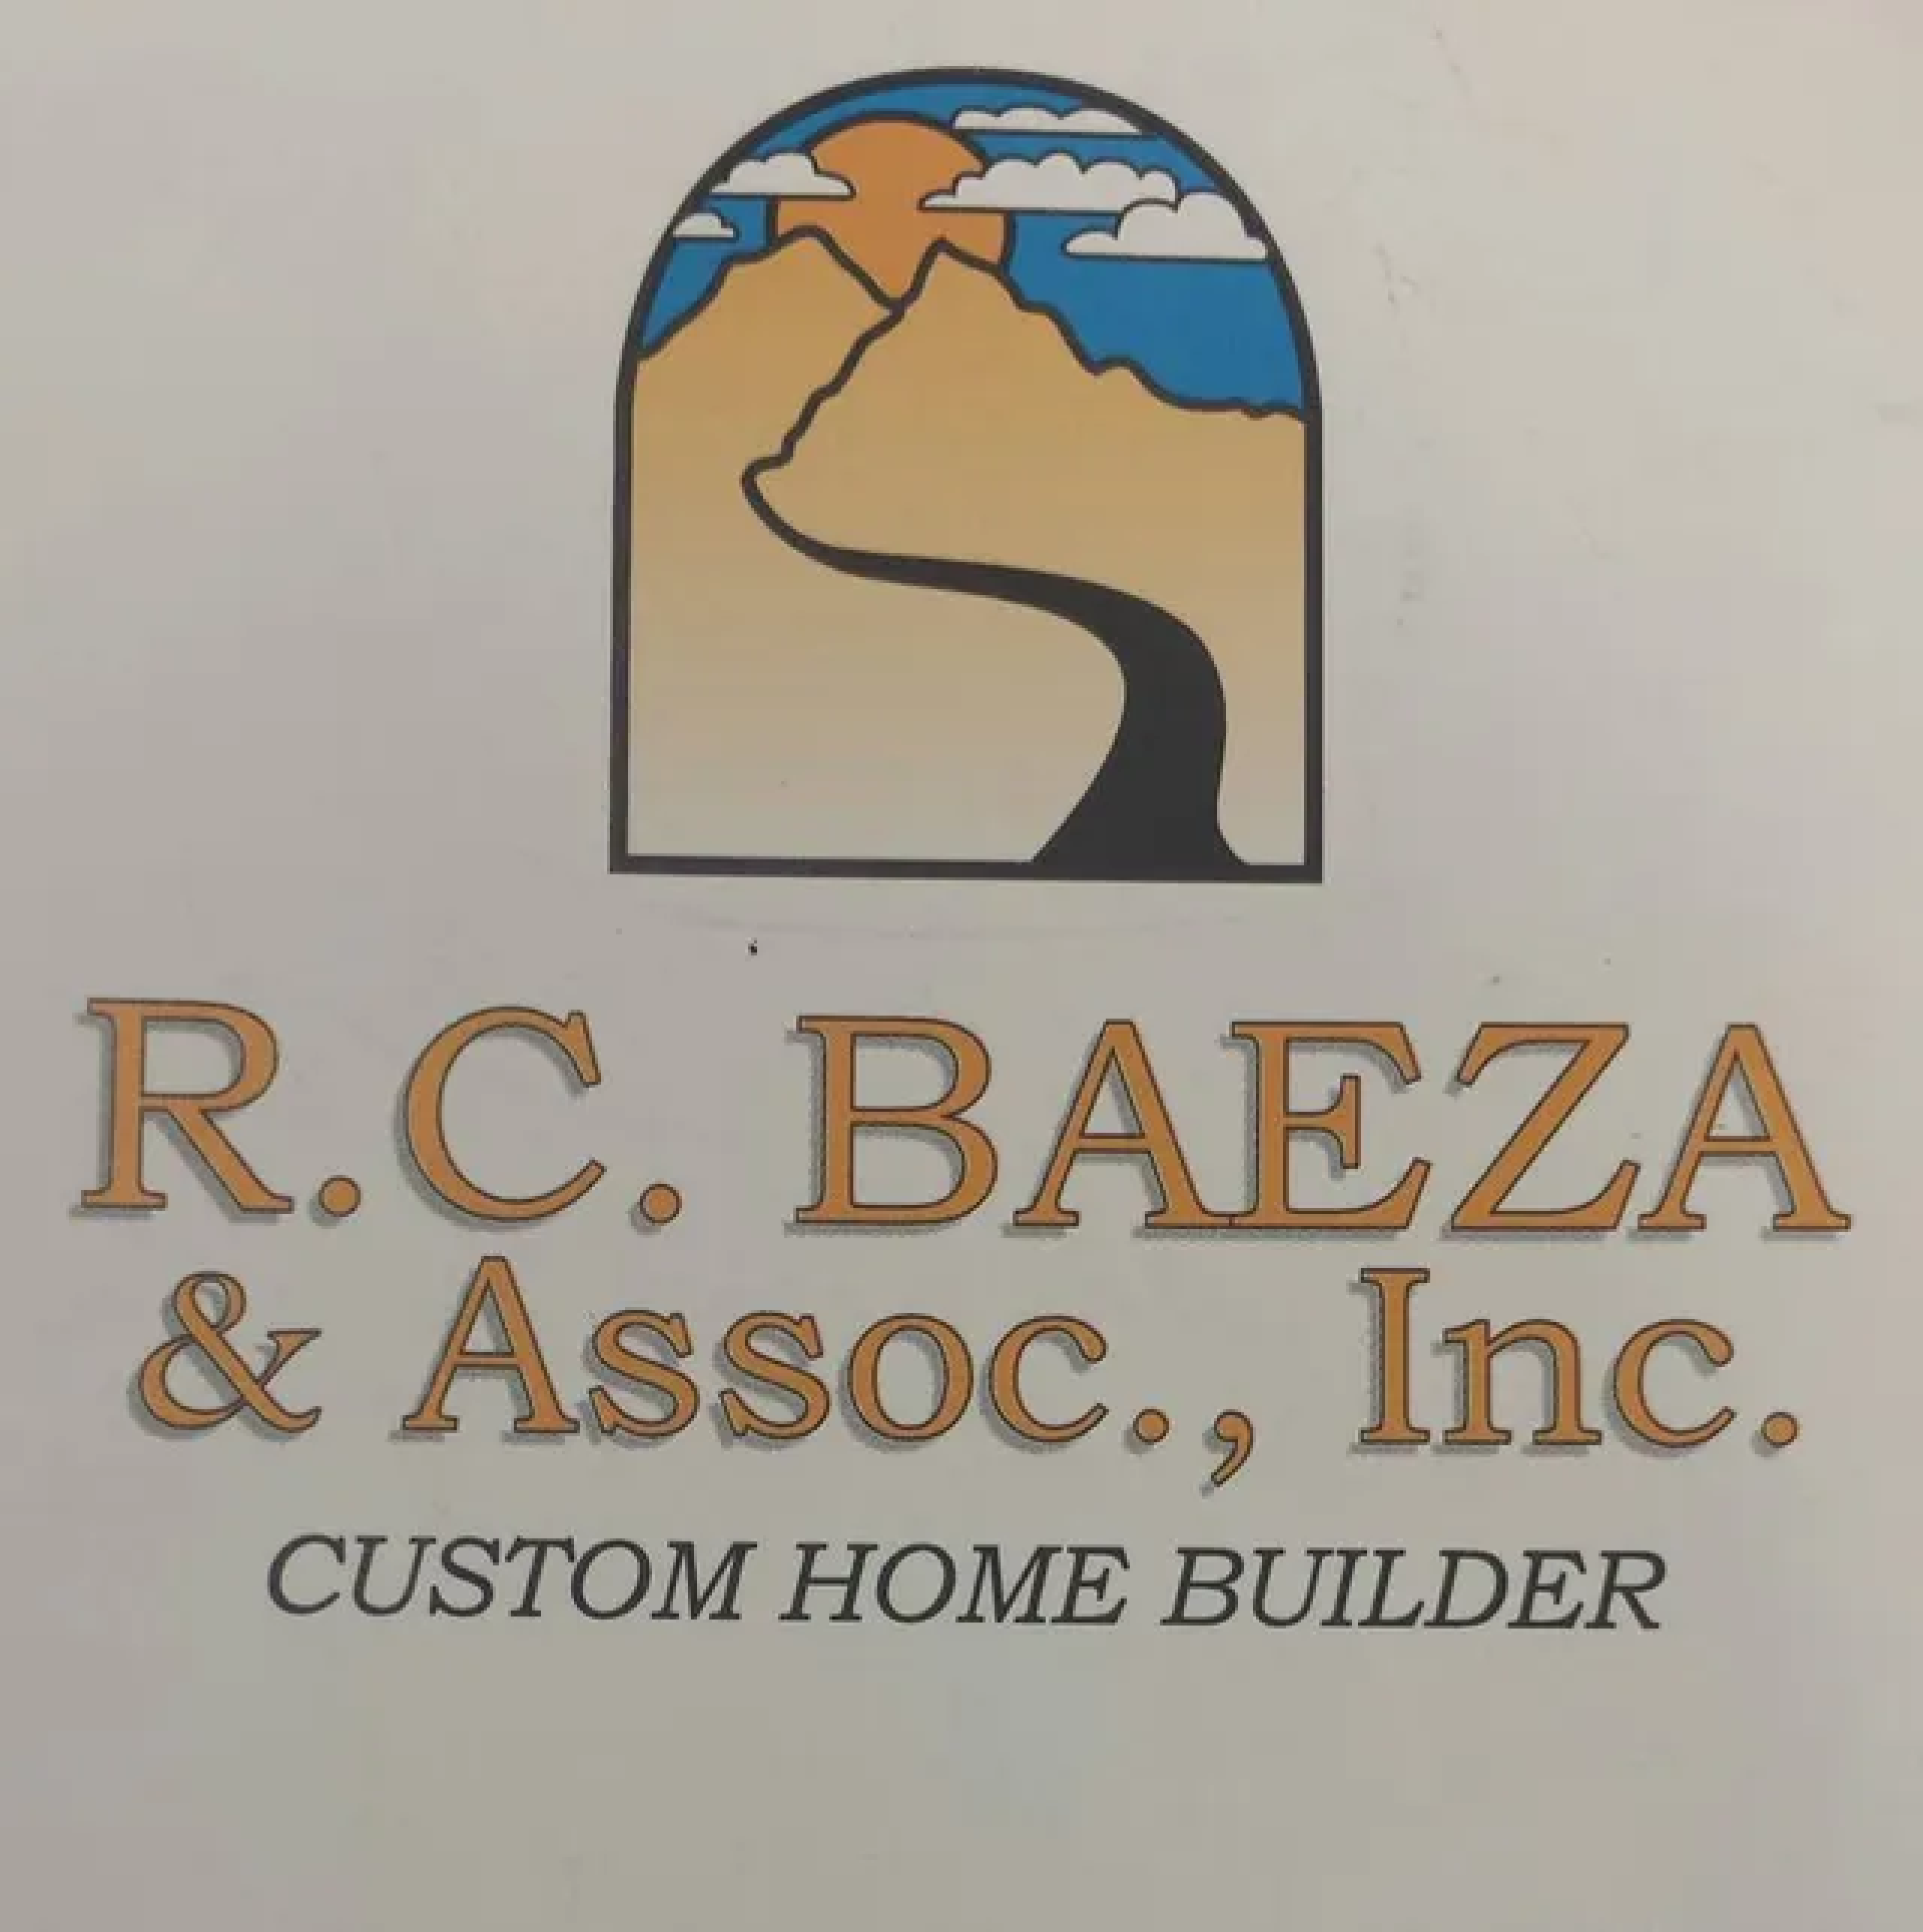 R.C. Baeza & Assoc., Inc.